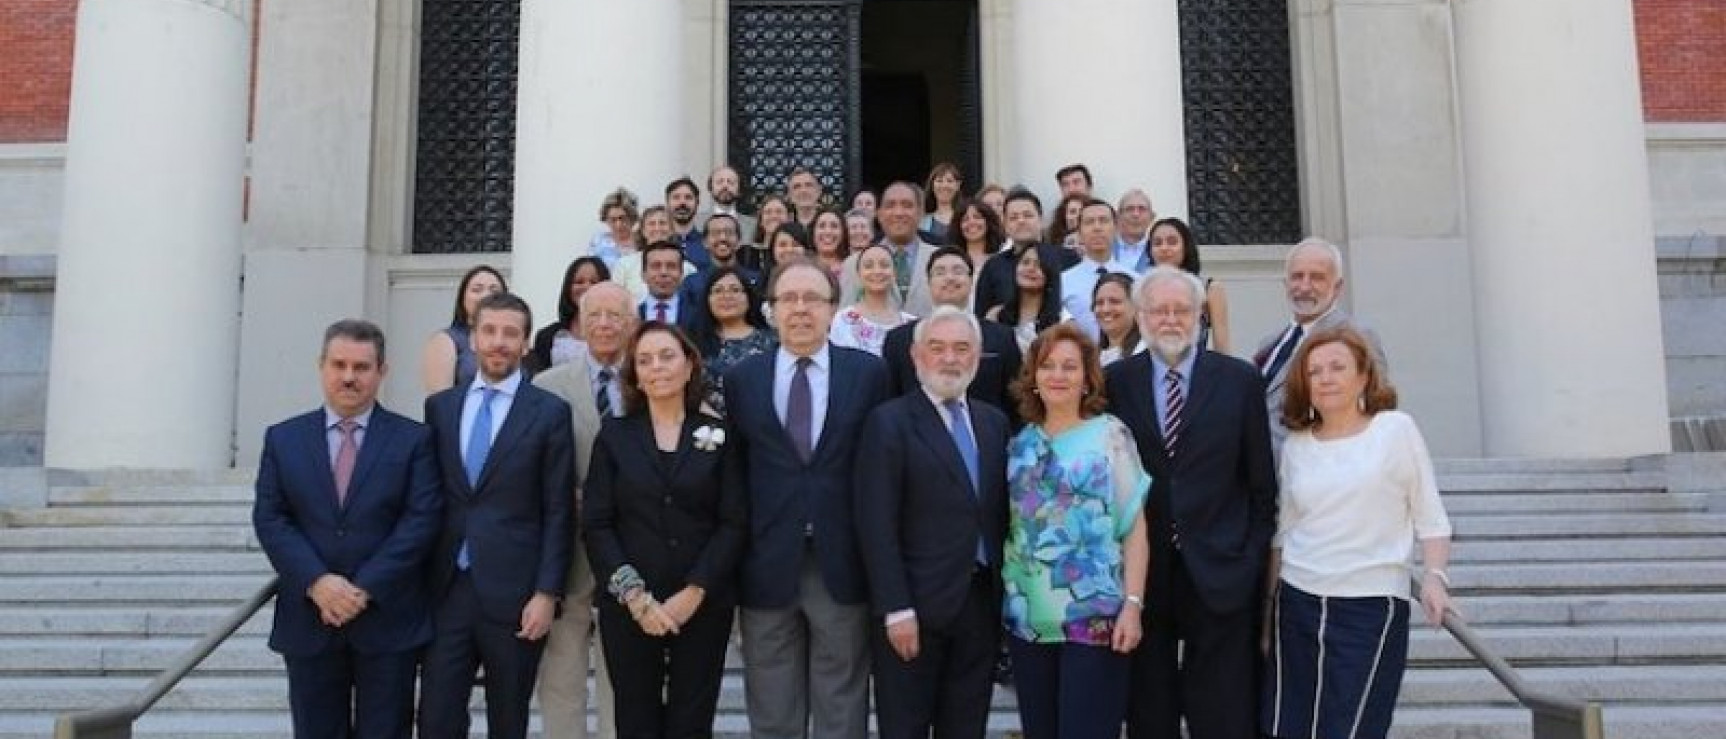 Estudiantes, profesores y académicos en las escalinatas de la RAE. Curso 2016-2017.